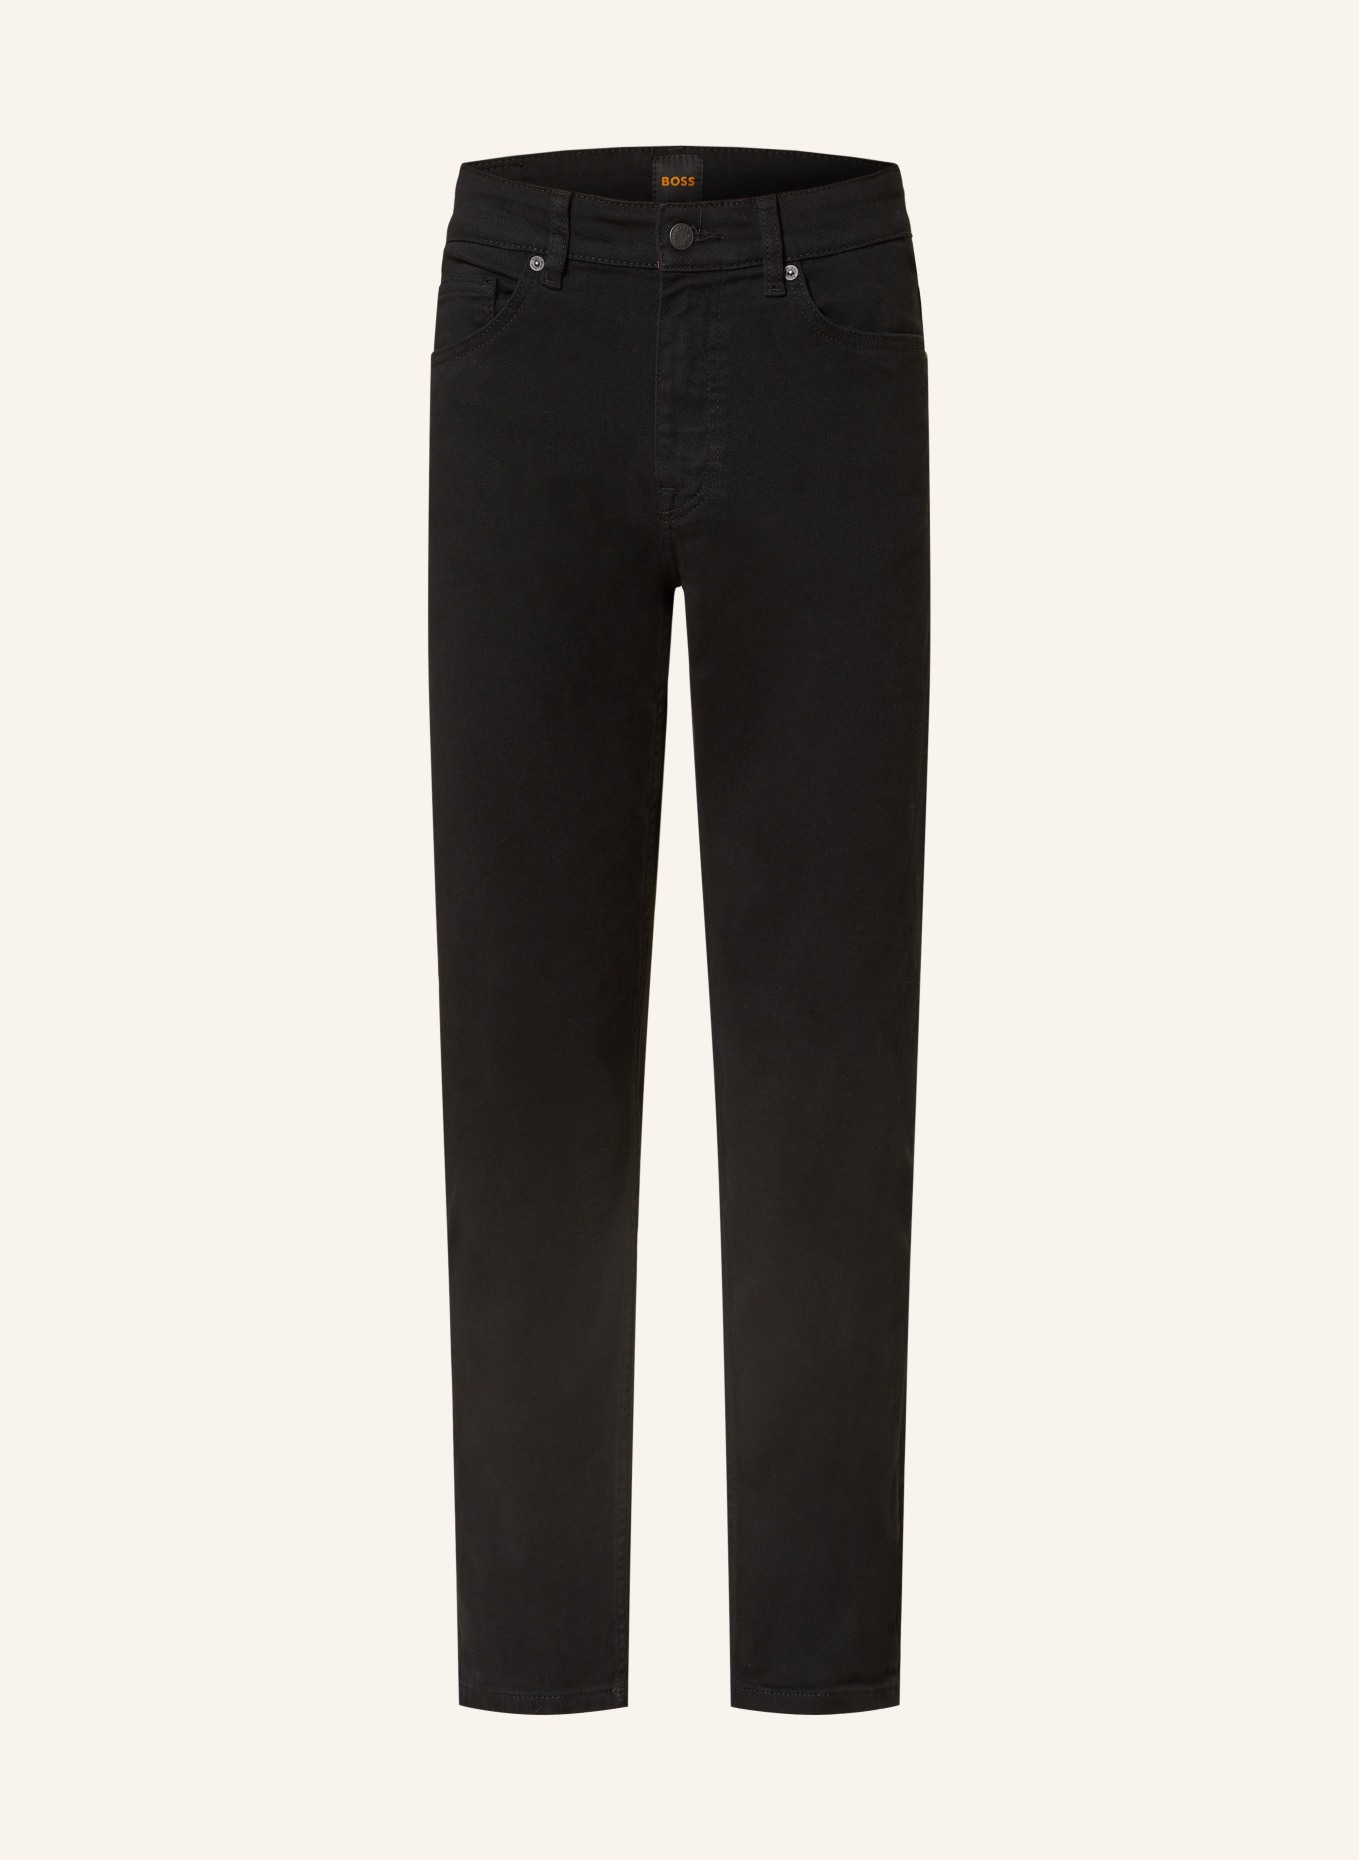 BOSS Jeans DELAWARE Slim Fit, Farbe: 003 BLACK (Bild 1)